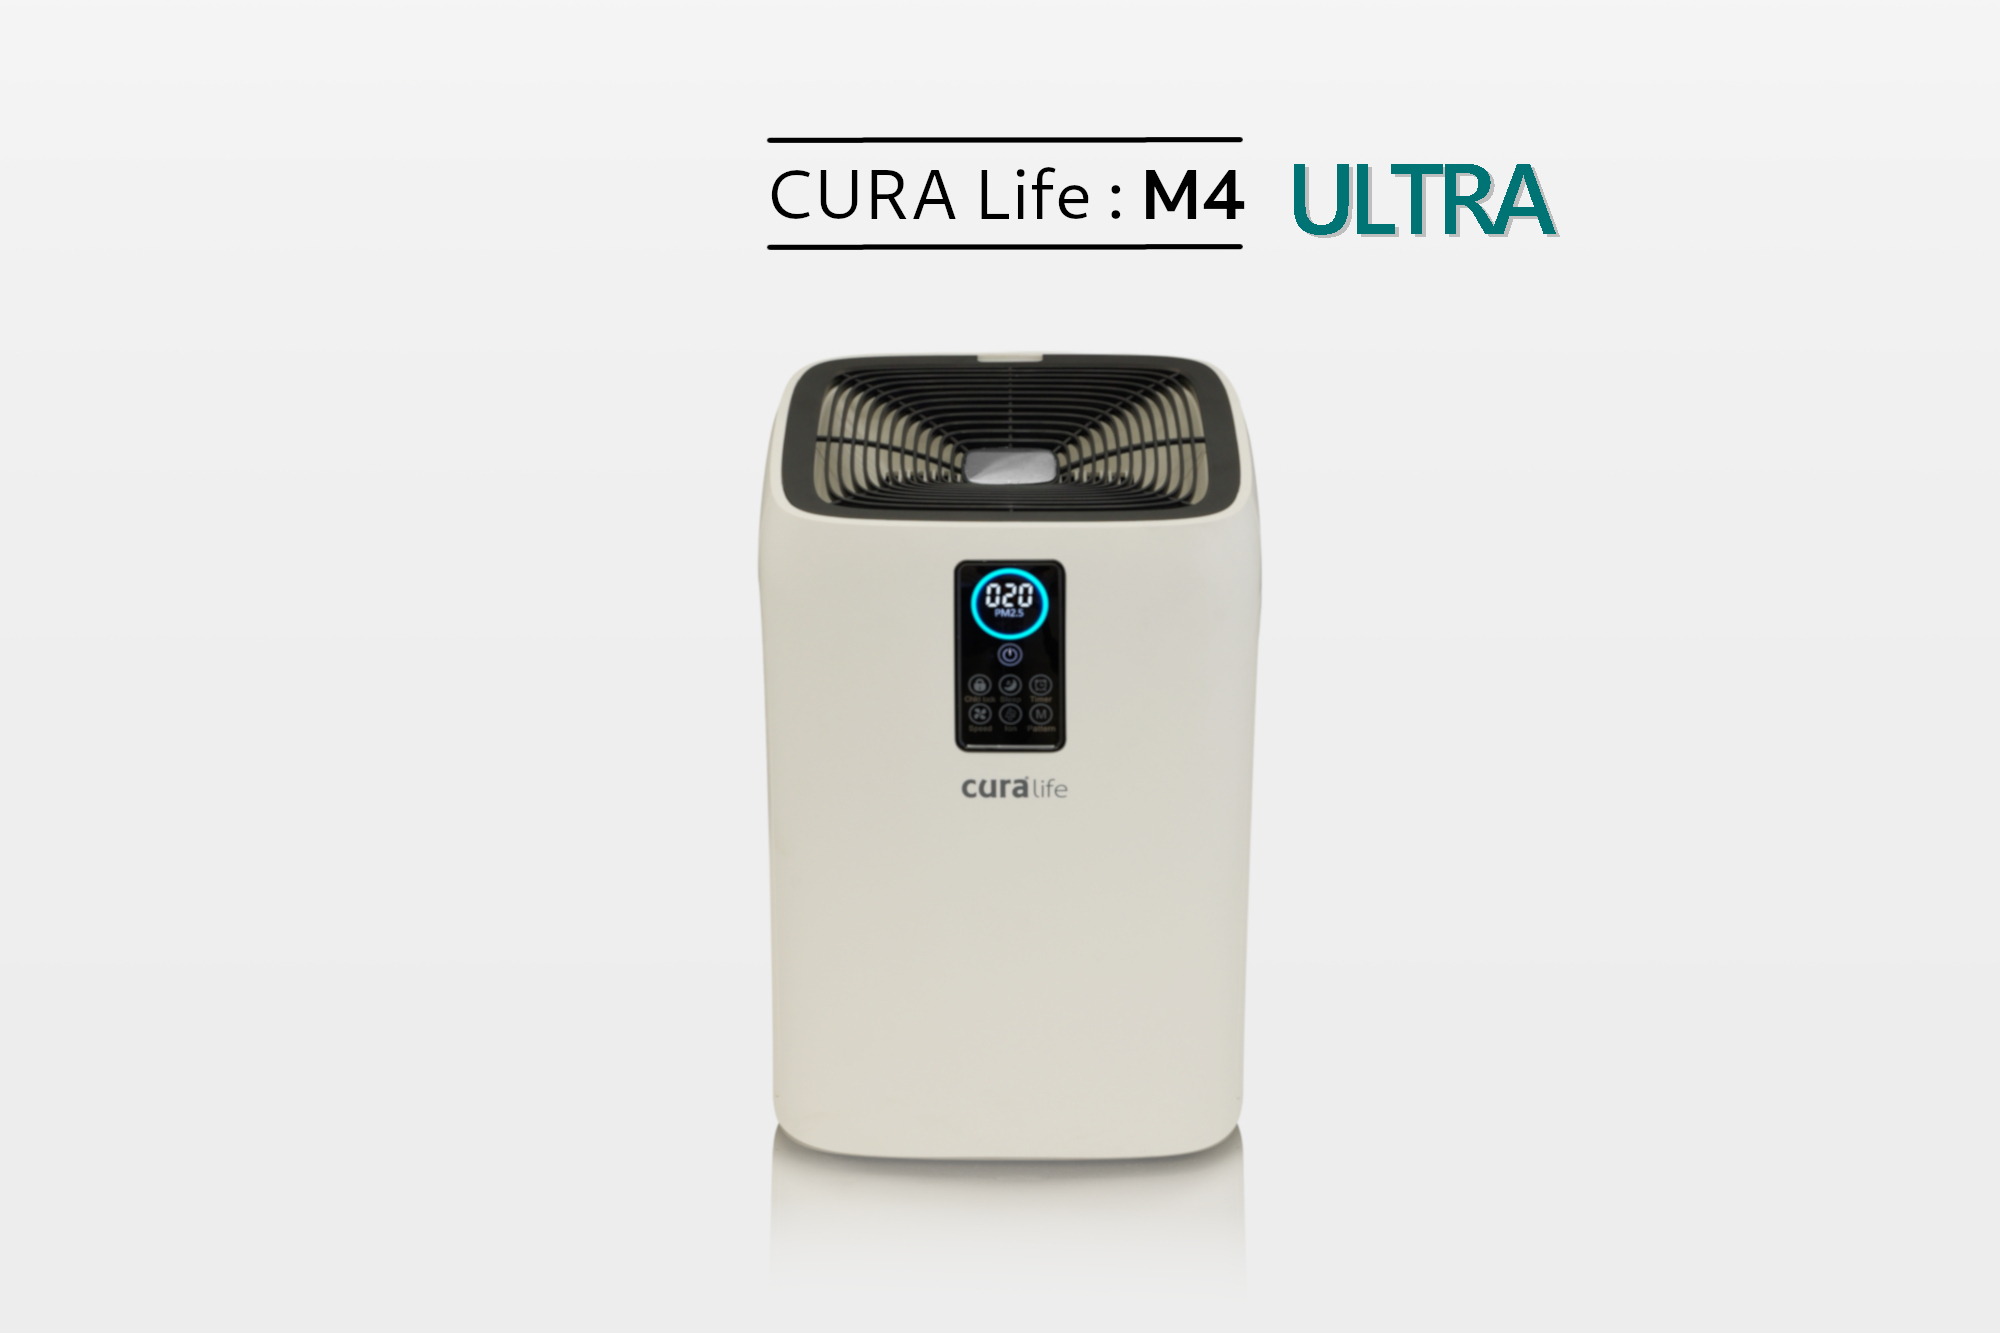 เครื่องฟอกอากาศ กรองดักกำาจัดฝุ่นด้วยระบบ Pre-filter ร่วมด้วยระบบ HEPA filter จึงทำให้สามารถดักจับฝุ่นละอองในอากาศที่มีขนาดเล็กไม่เกิน 25 ไมครอน หรือ PM 2.5 ได้ ดักจับกลิ่นด้วย Activated Carbon ยี่ห้อ CURA Life รุ่น M4U